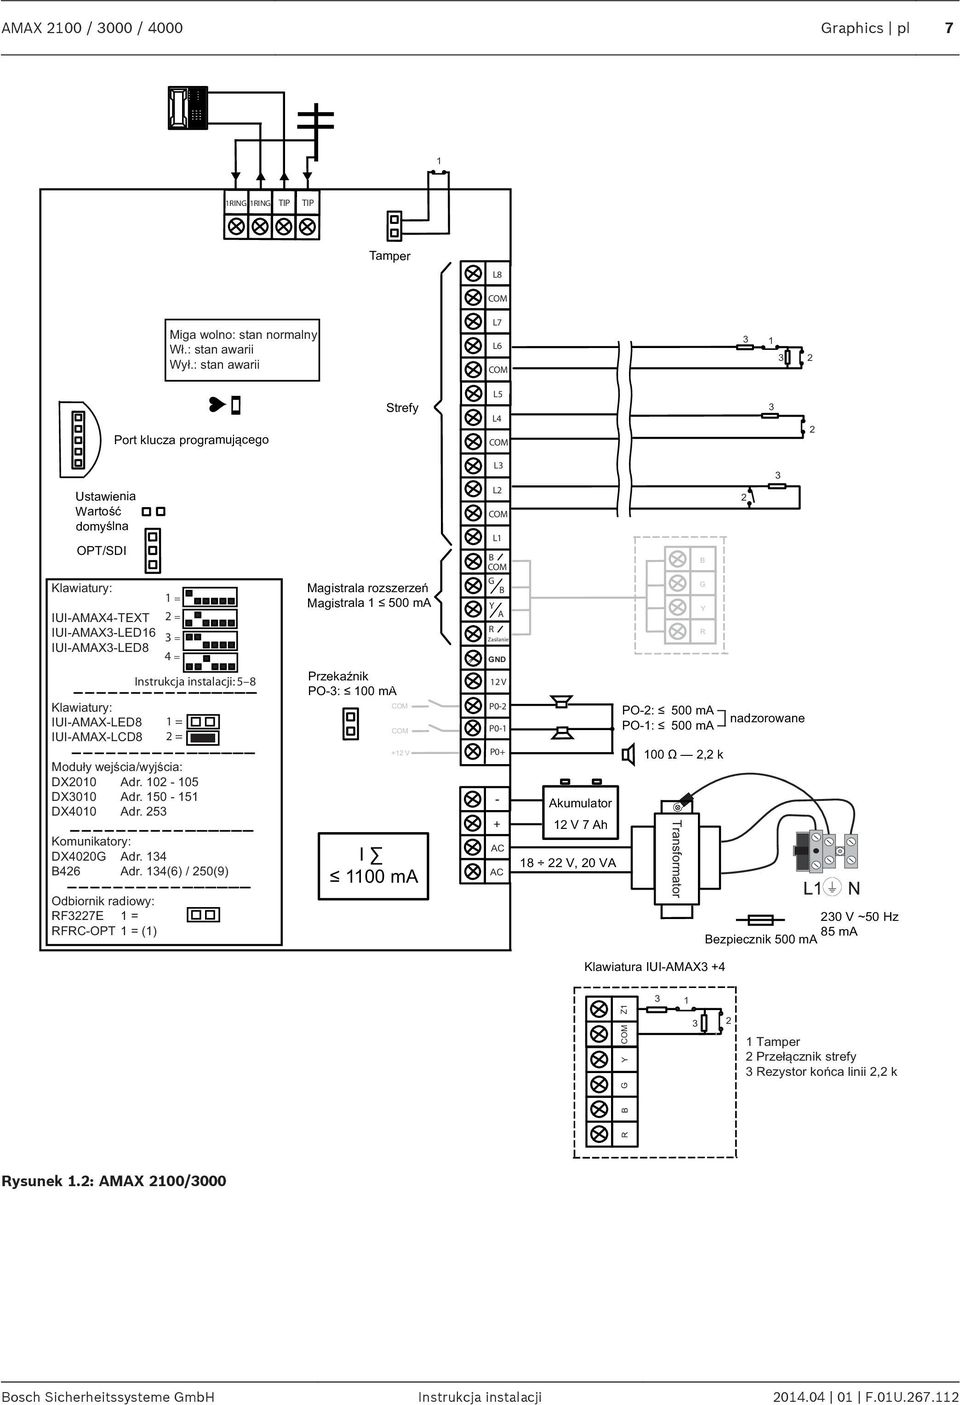 IUI-AMAX-LCD8 Moduły wejści/wyjści: DX2010 Adr. 102-105 DX3010 Adr. 150-151 DX4010 Adr. 253 Komuniktory: DX4020G Adr. 134 B426 Adr.